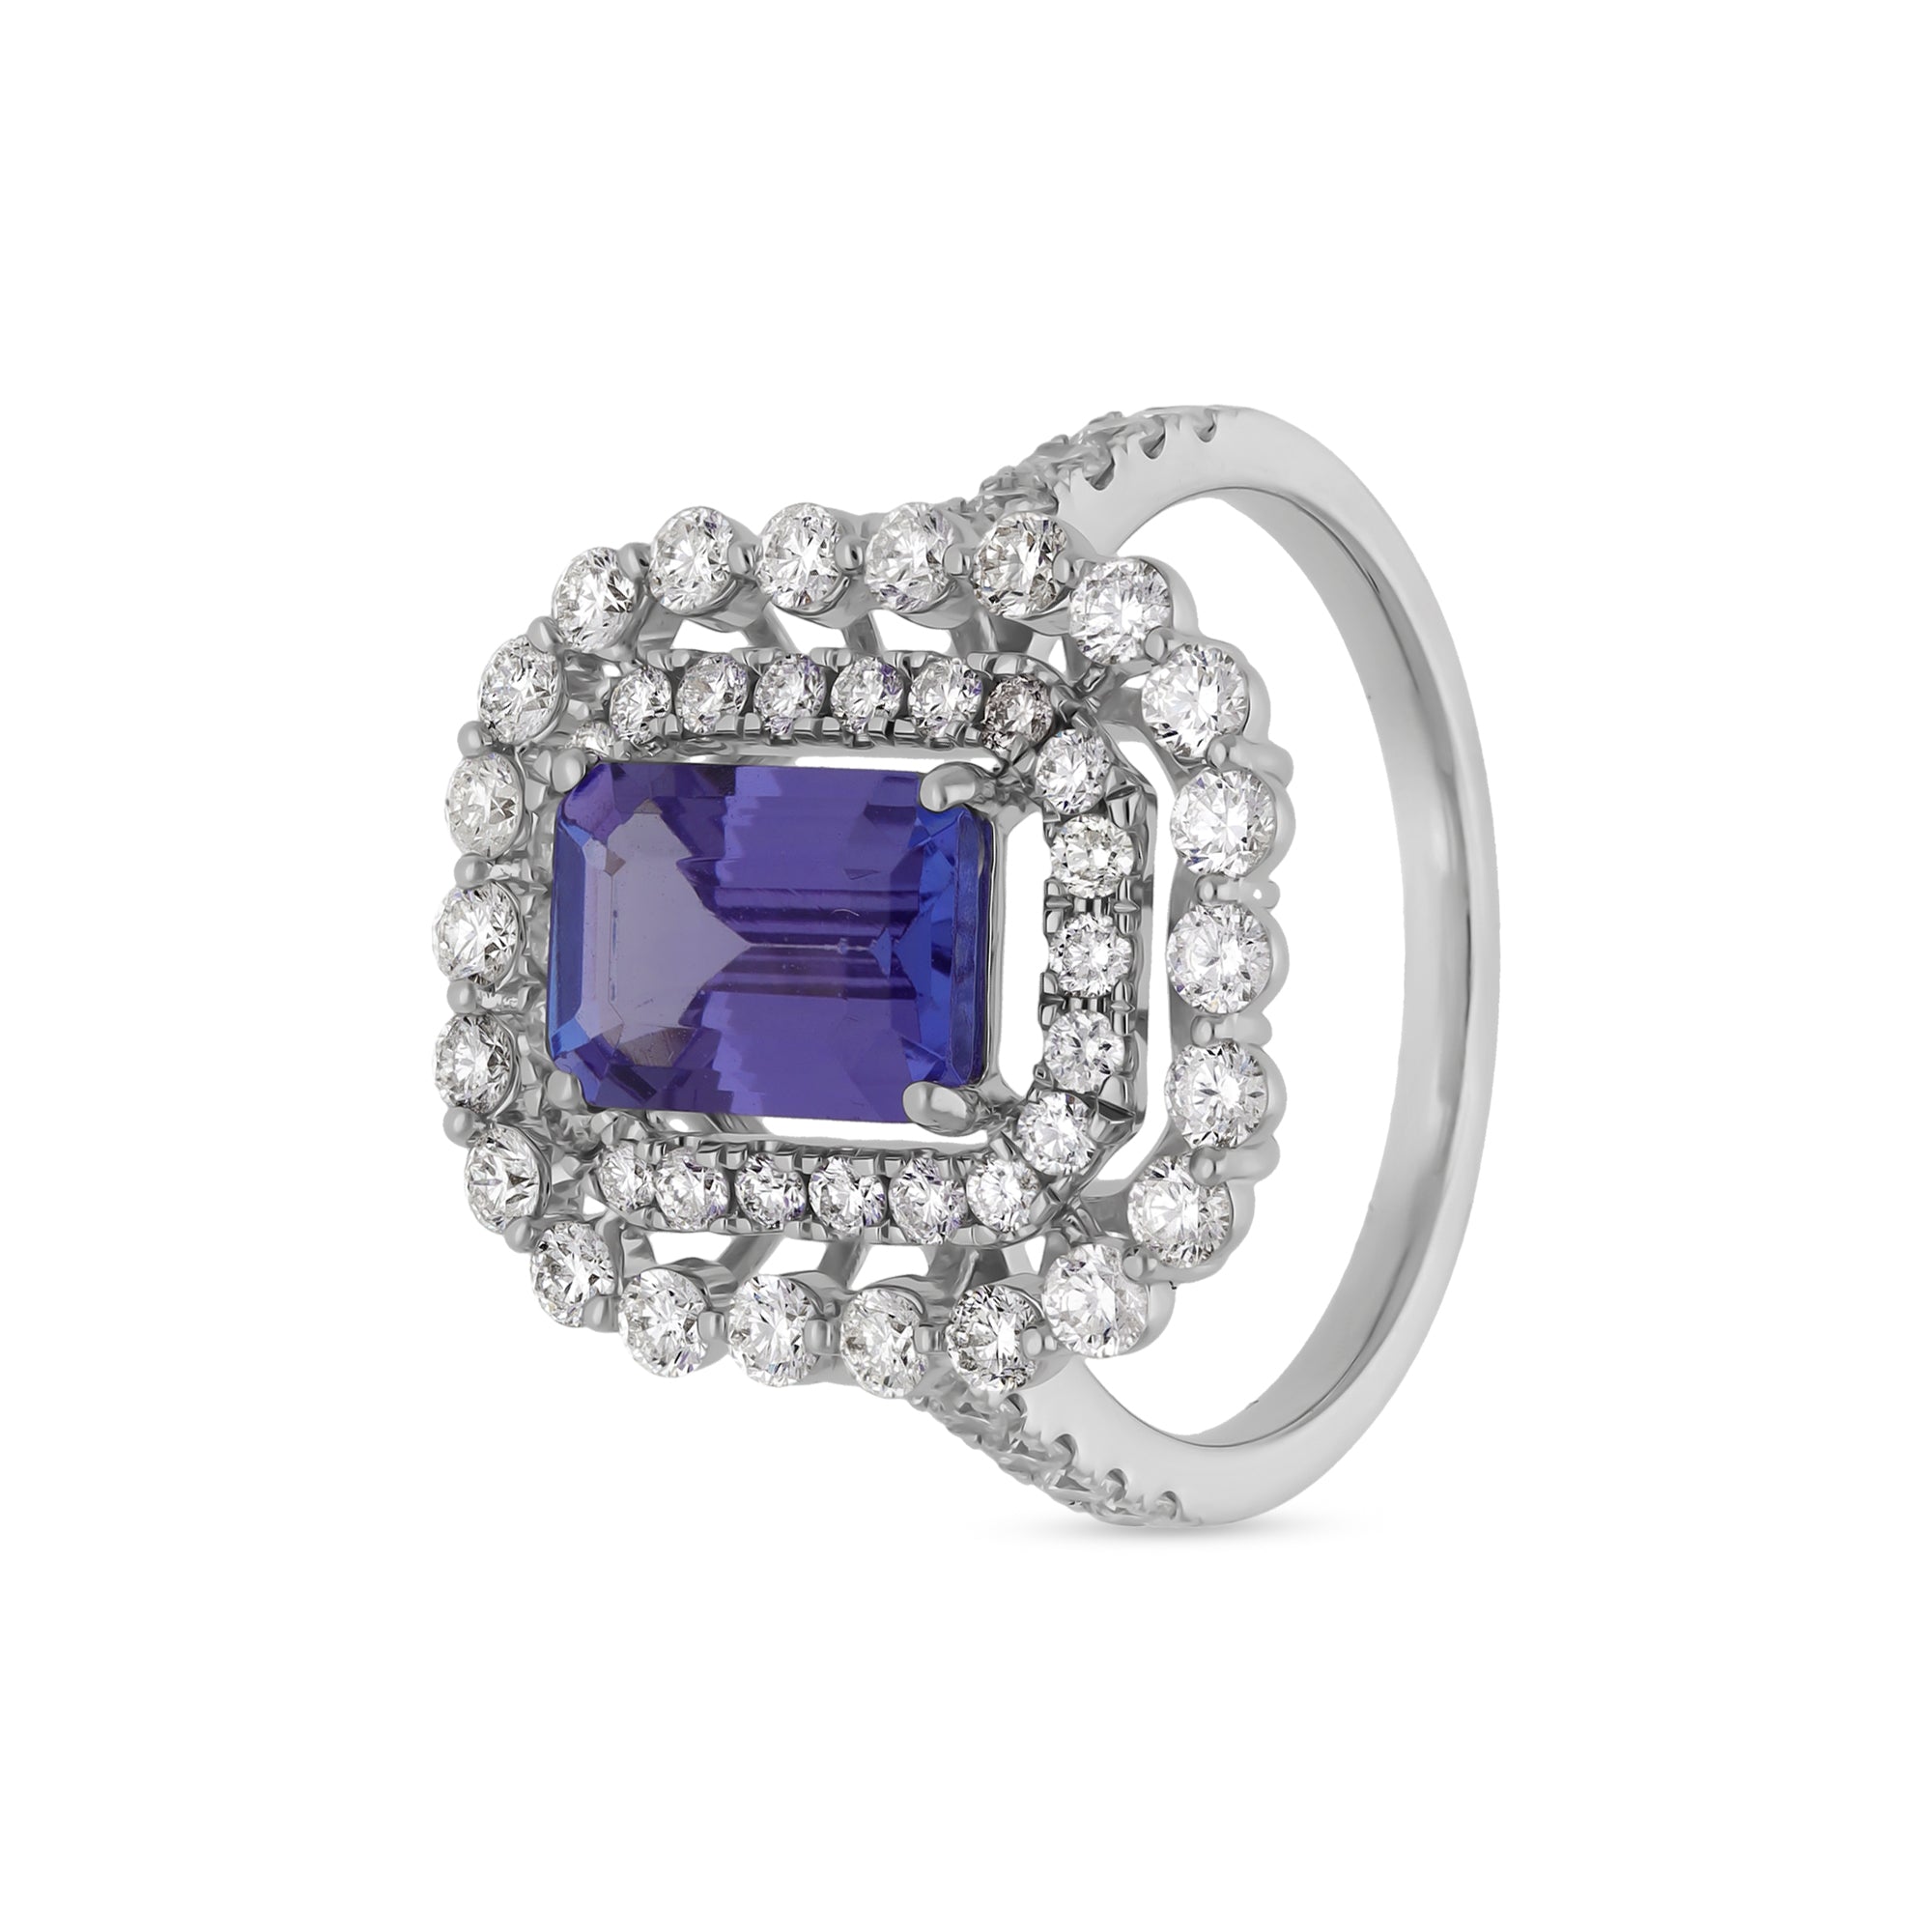 Обручальное кольцо из белого золота с изумрудно-голубым танзанитом и круглым натуральным бриллиантом 